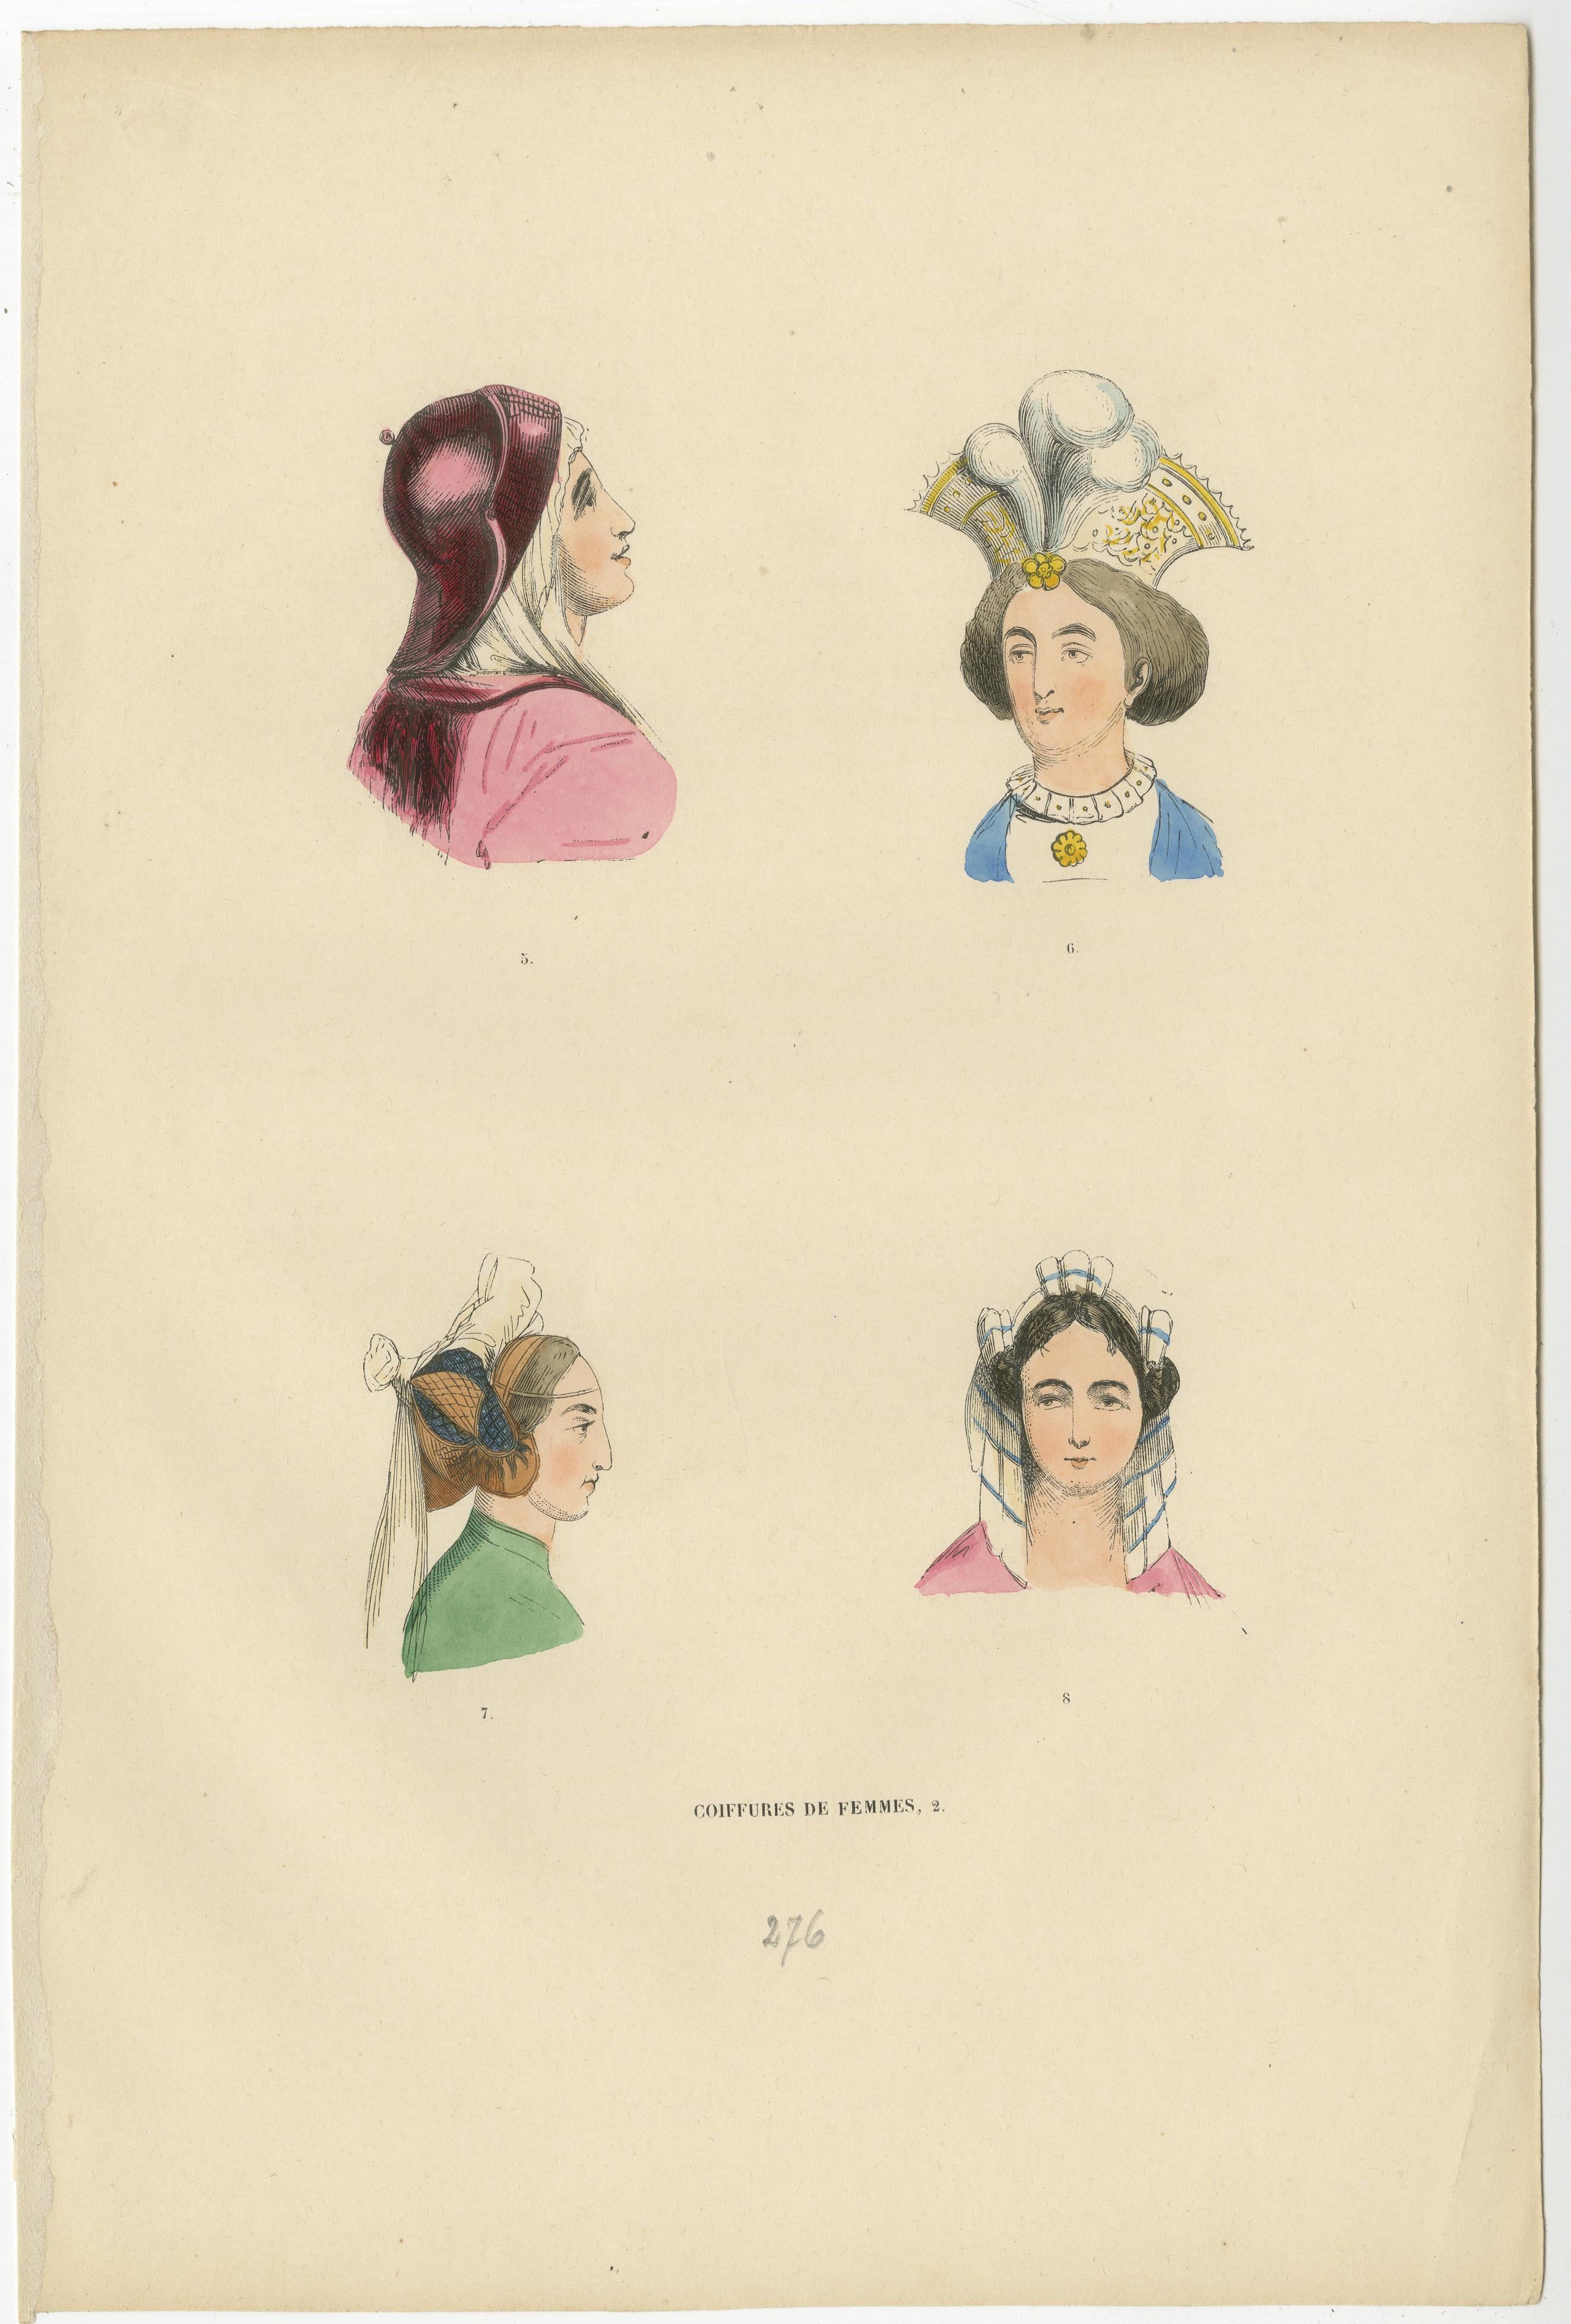 Diese exquisiten Lithografien aus der 1847 veröffentlichten Serie 